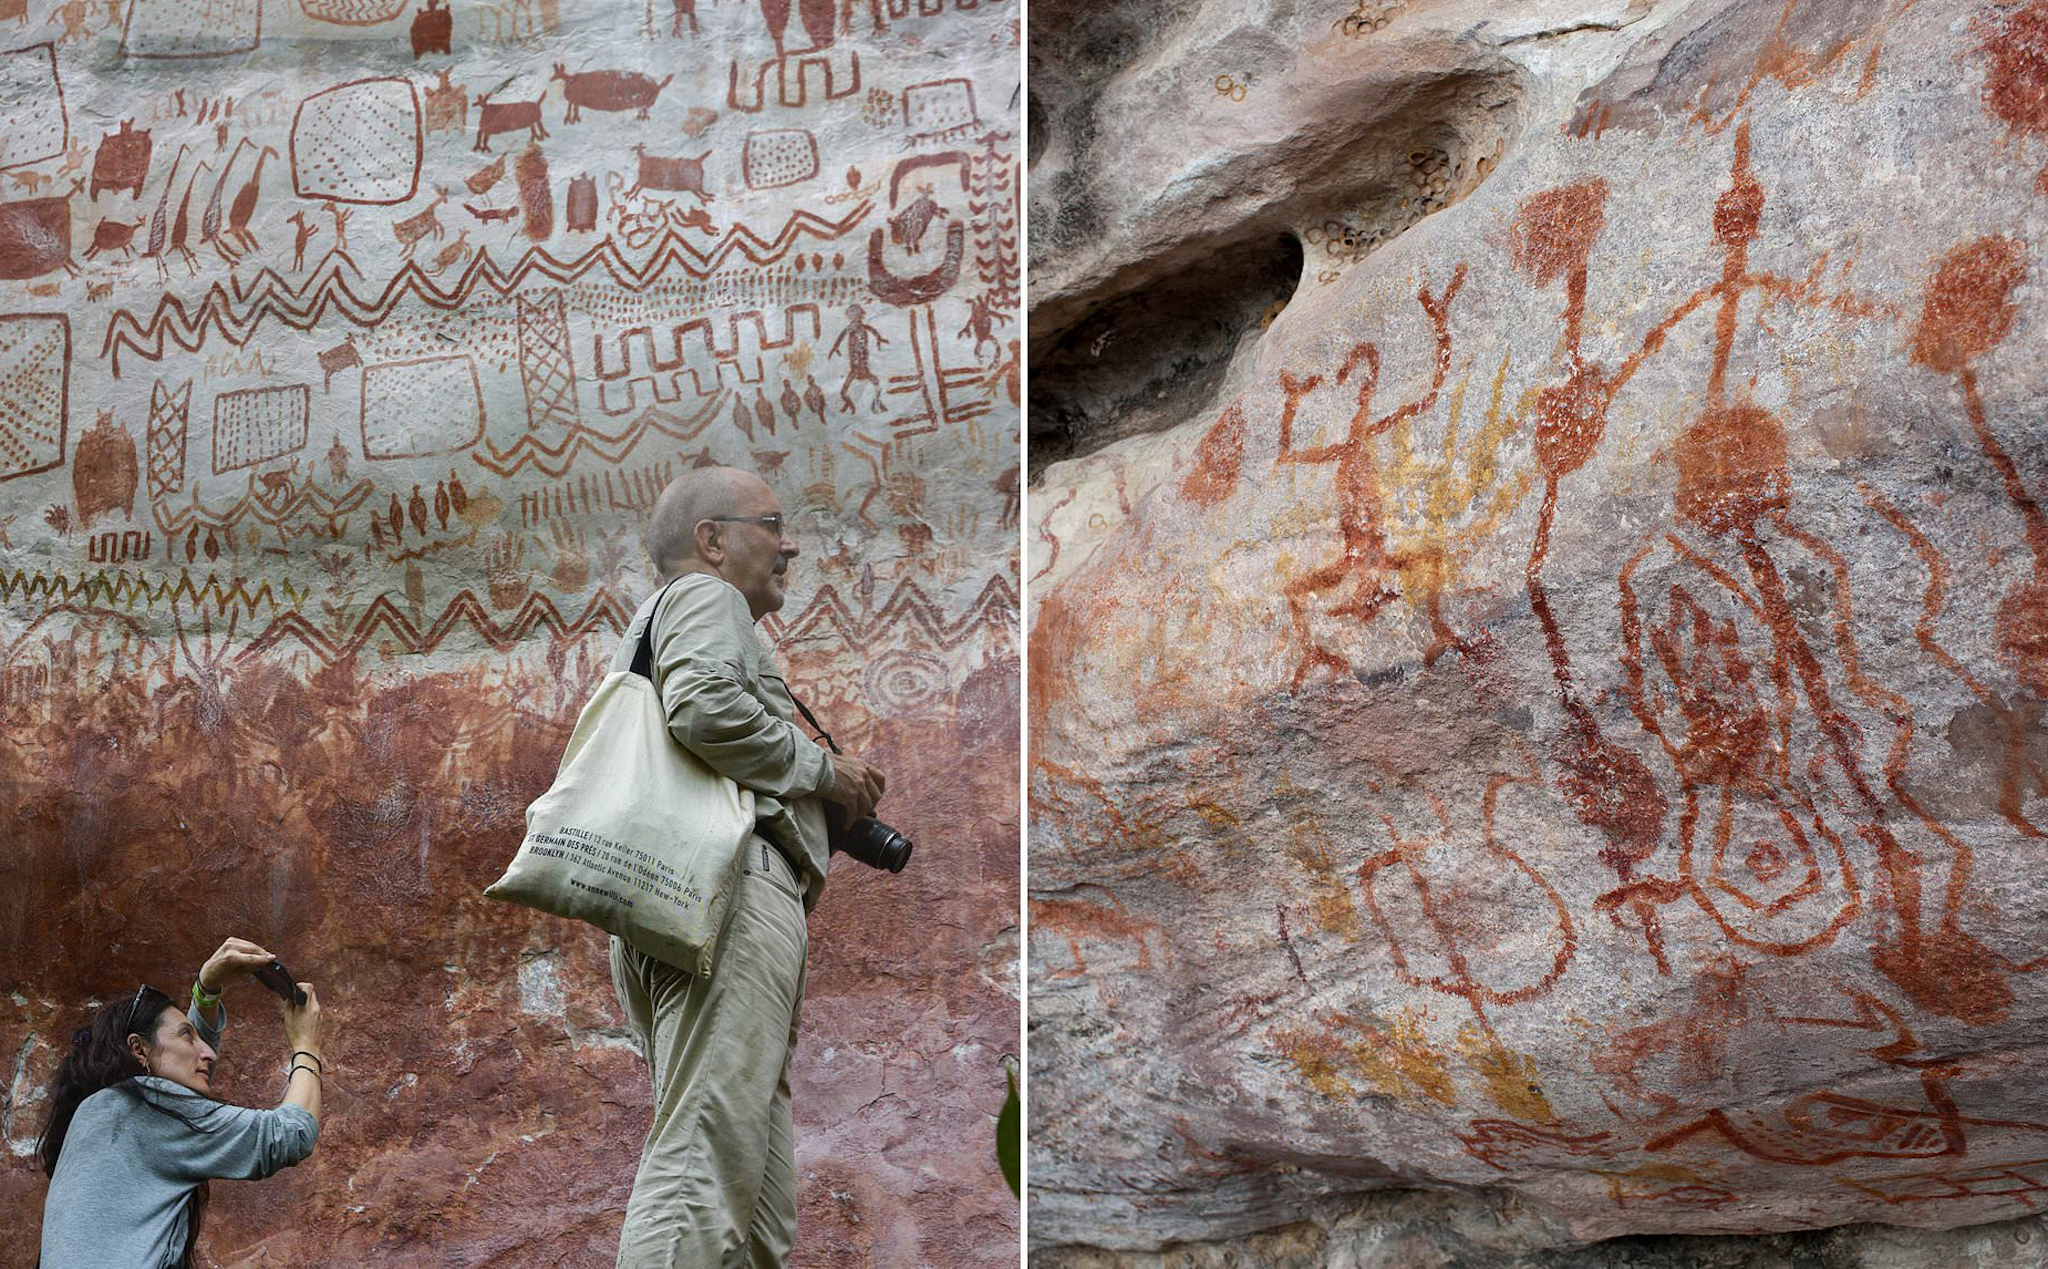 Phát hiện hàng chục ngàn bức tranh trên đá ở Amazon có niên đại 12.500 năm